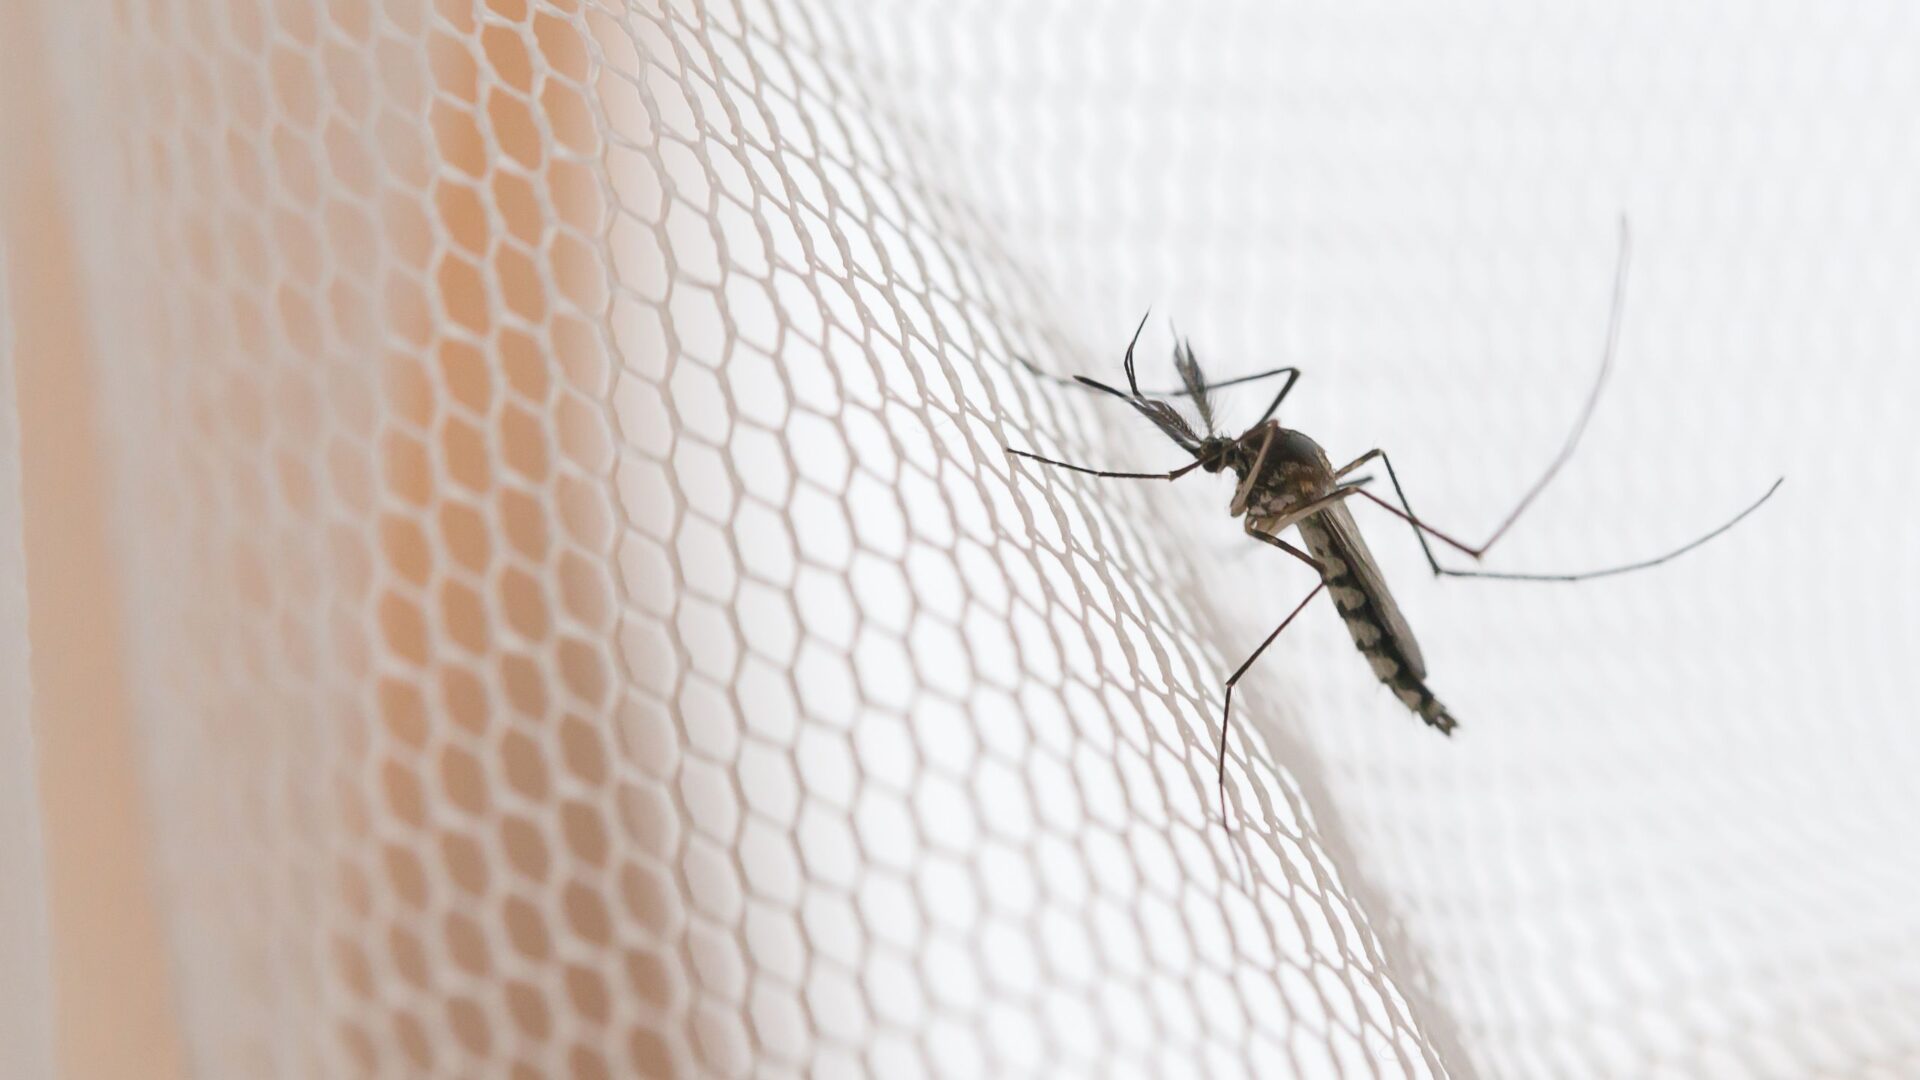 meer muggen verwacht tips voor jeukende muggenbulten